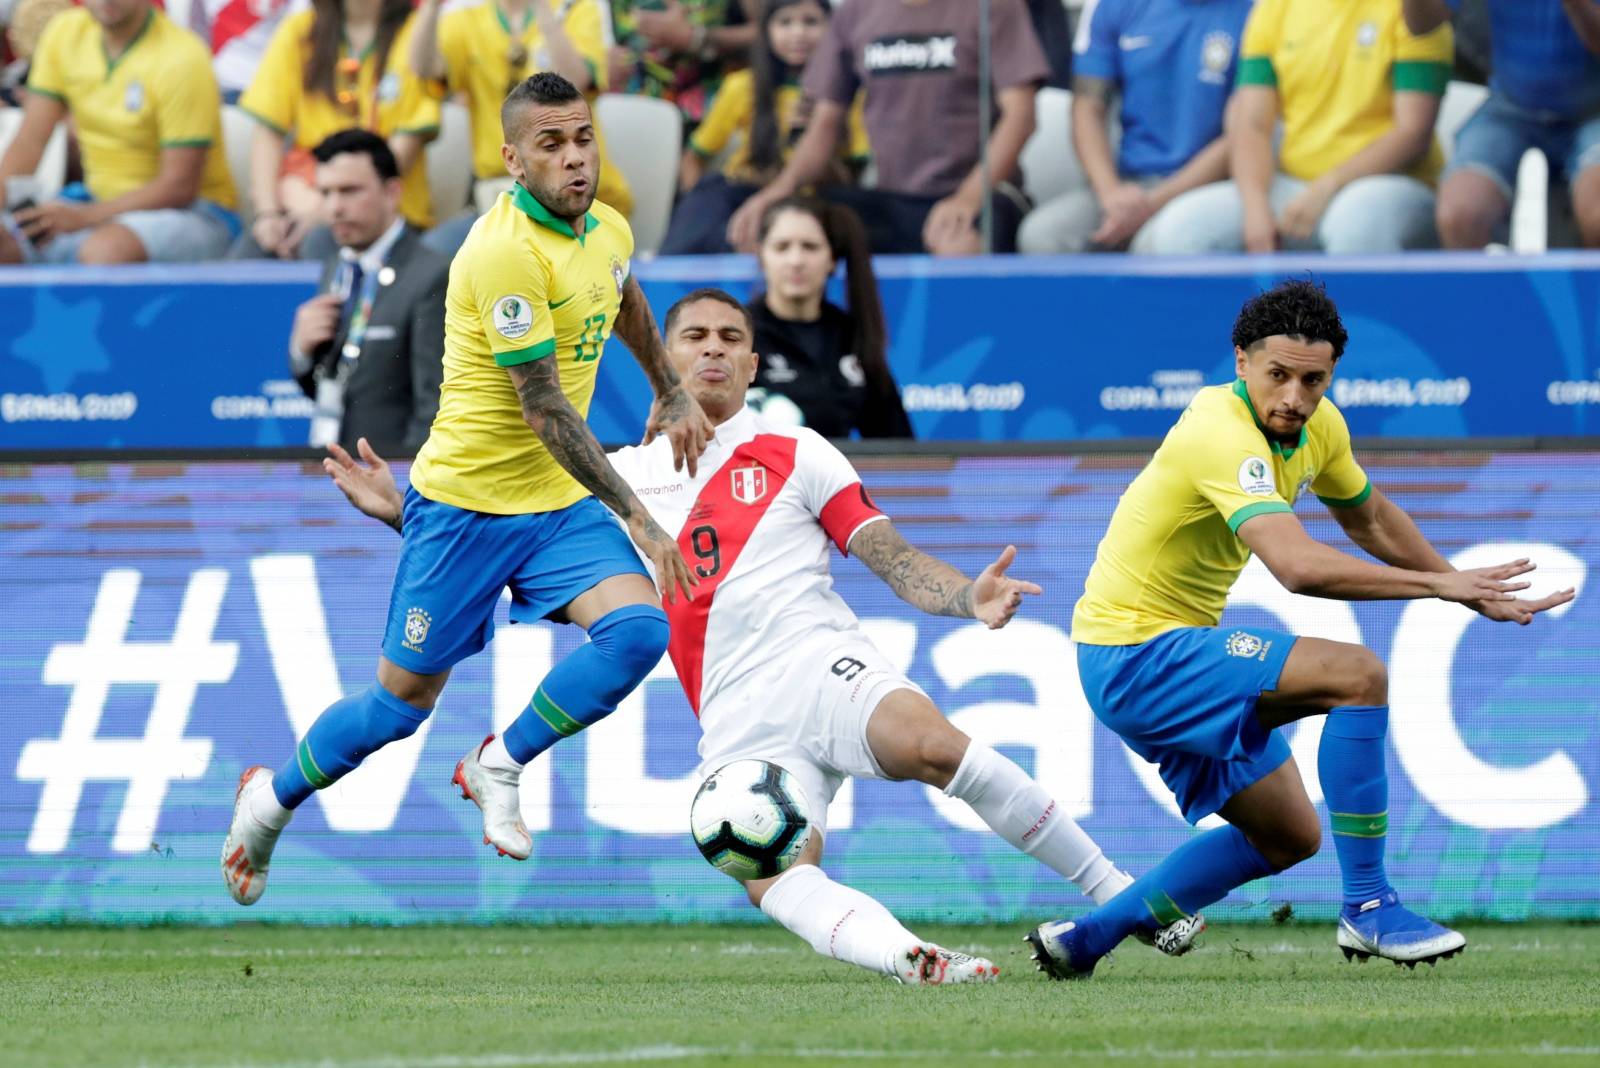 Copa America Brazil 2019 - Group A - Peru v Brazil